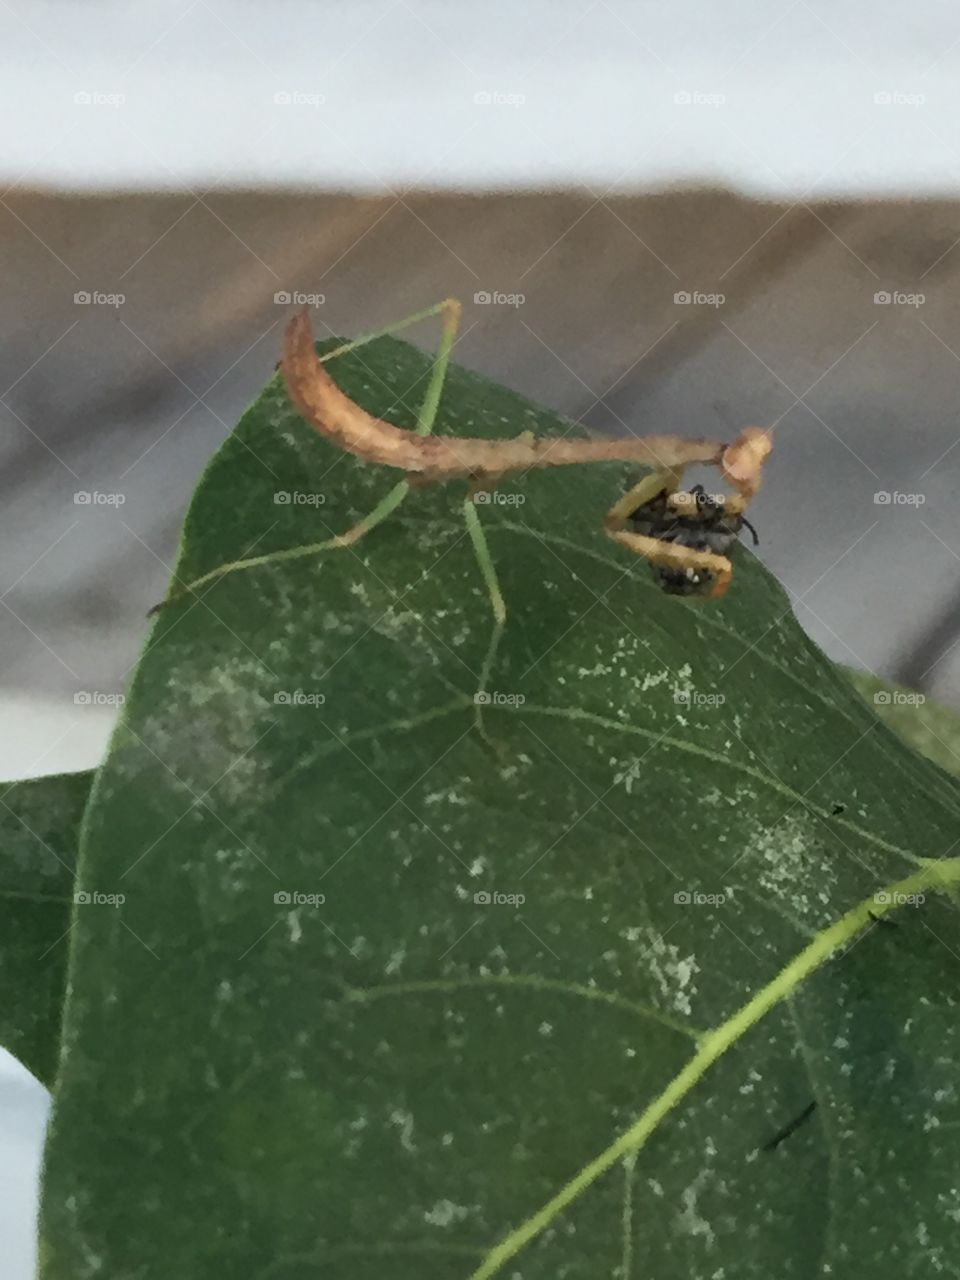 Preying mantis eating